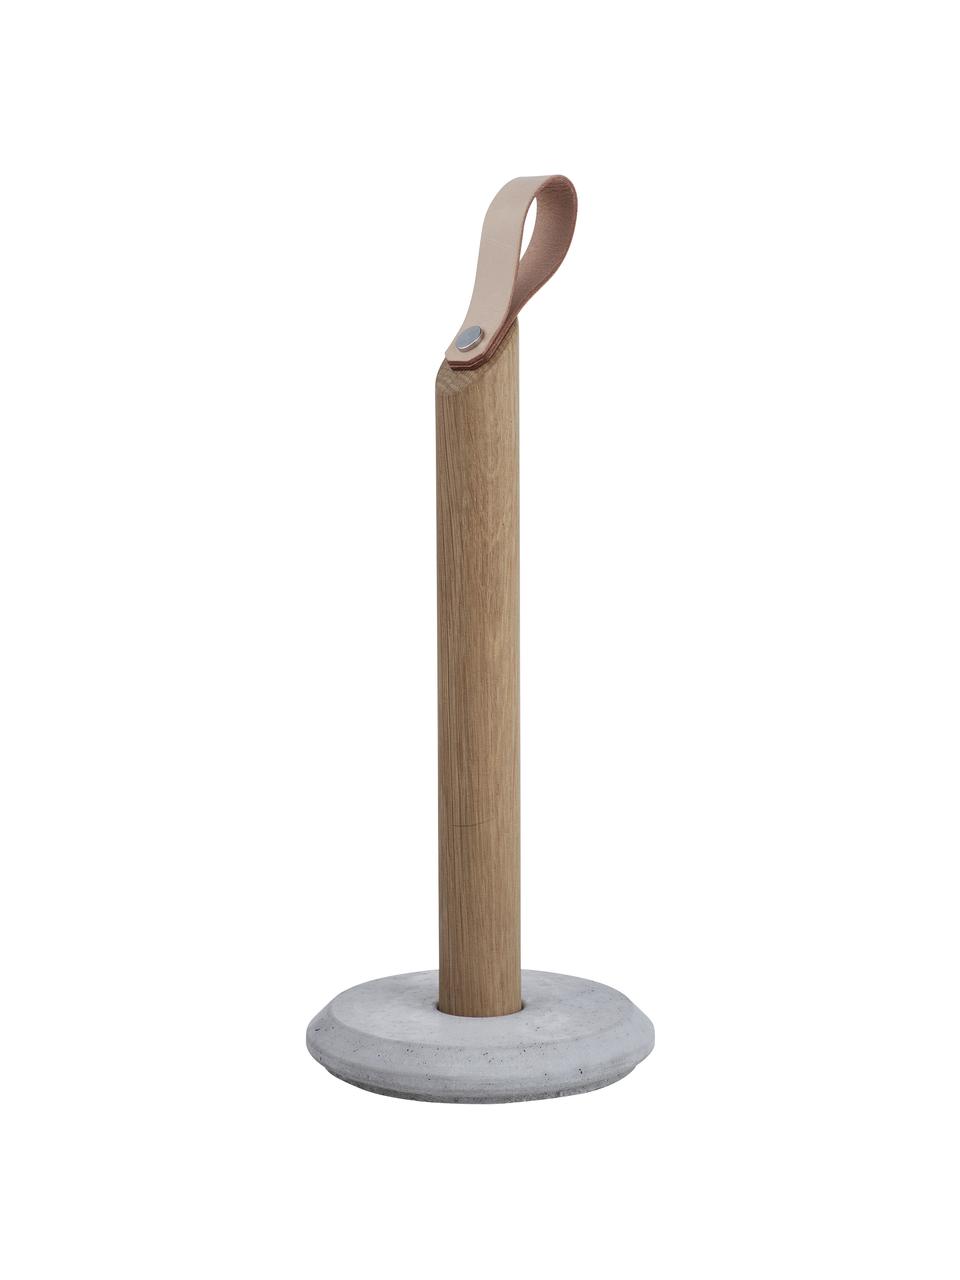 Portarotolo da cucina in legno di quercia Grab, Asta: legno di quercia, Piede: cemento, Legno chiaro, grigio, Ø 15 x Alt. 32 cm